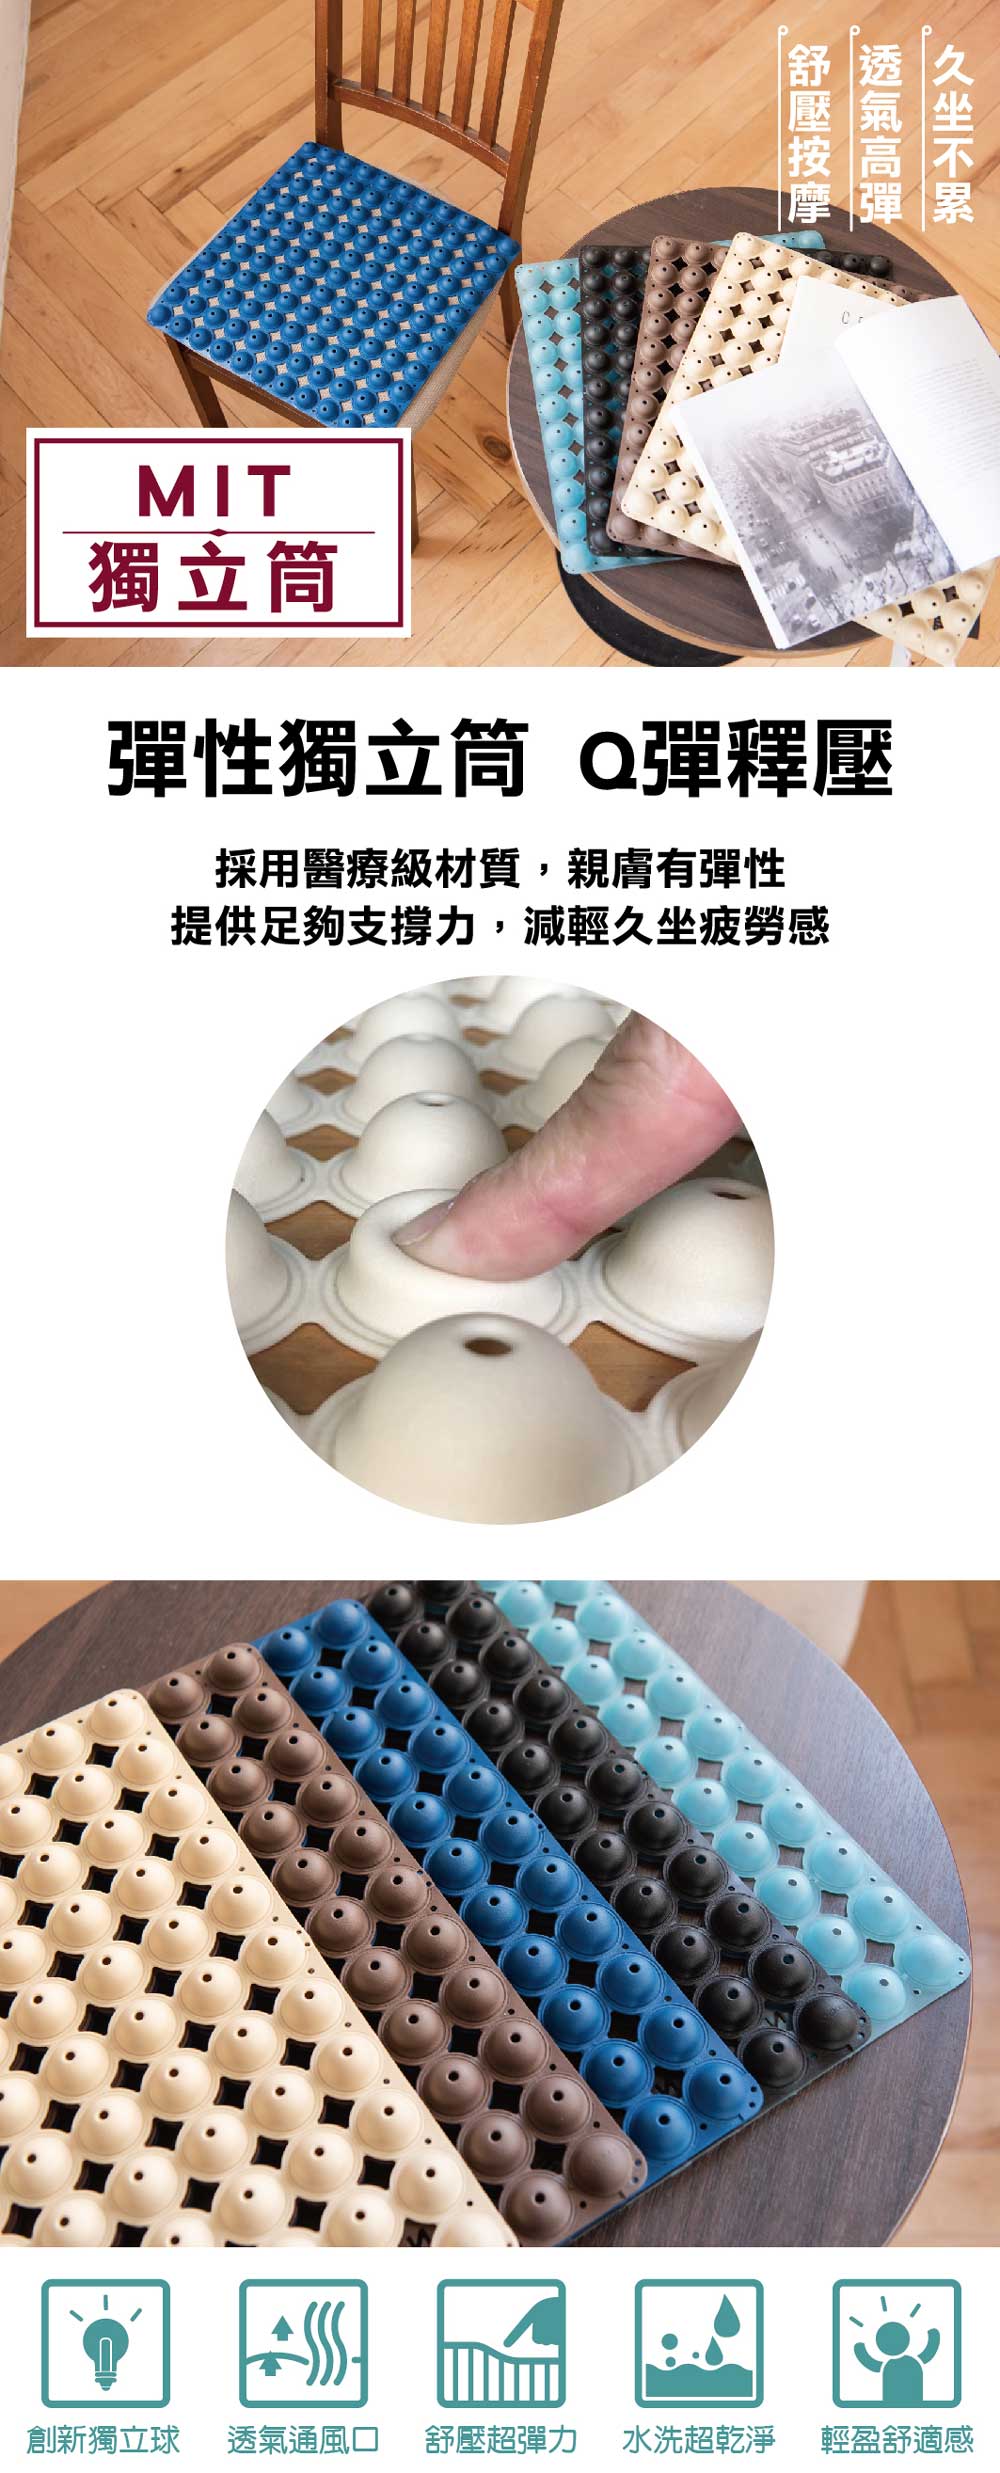 多功能透氣減壓坐墊(台灣製造)